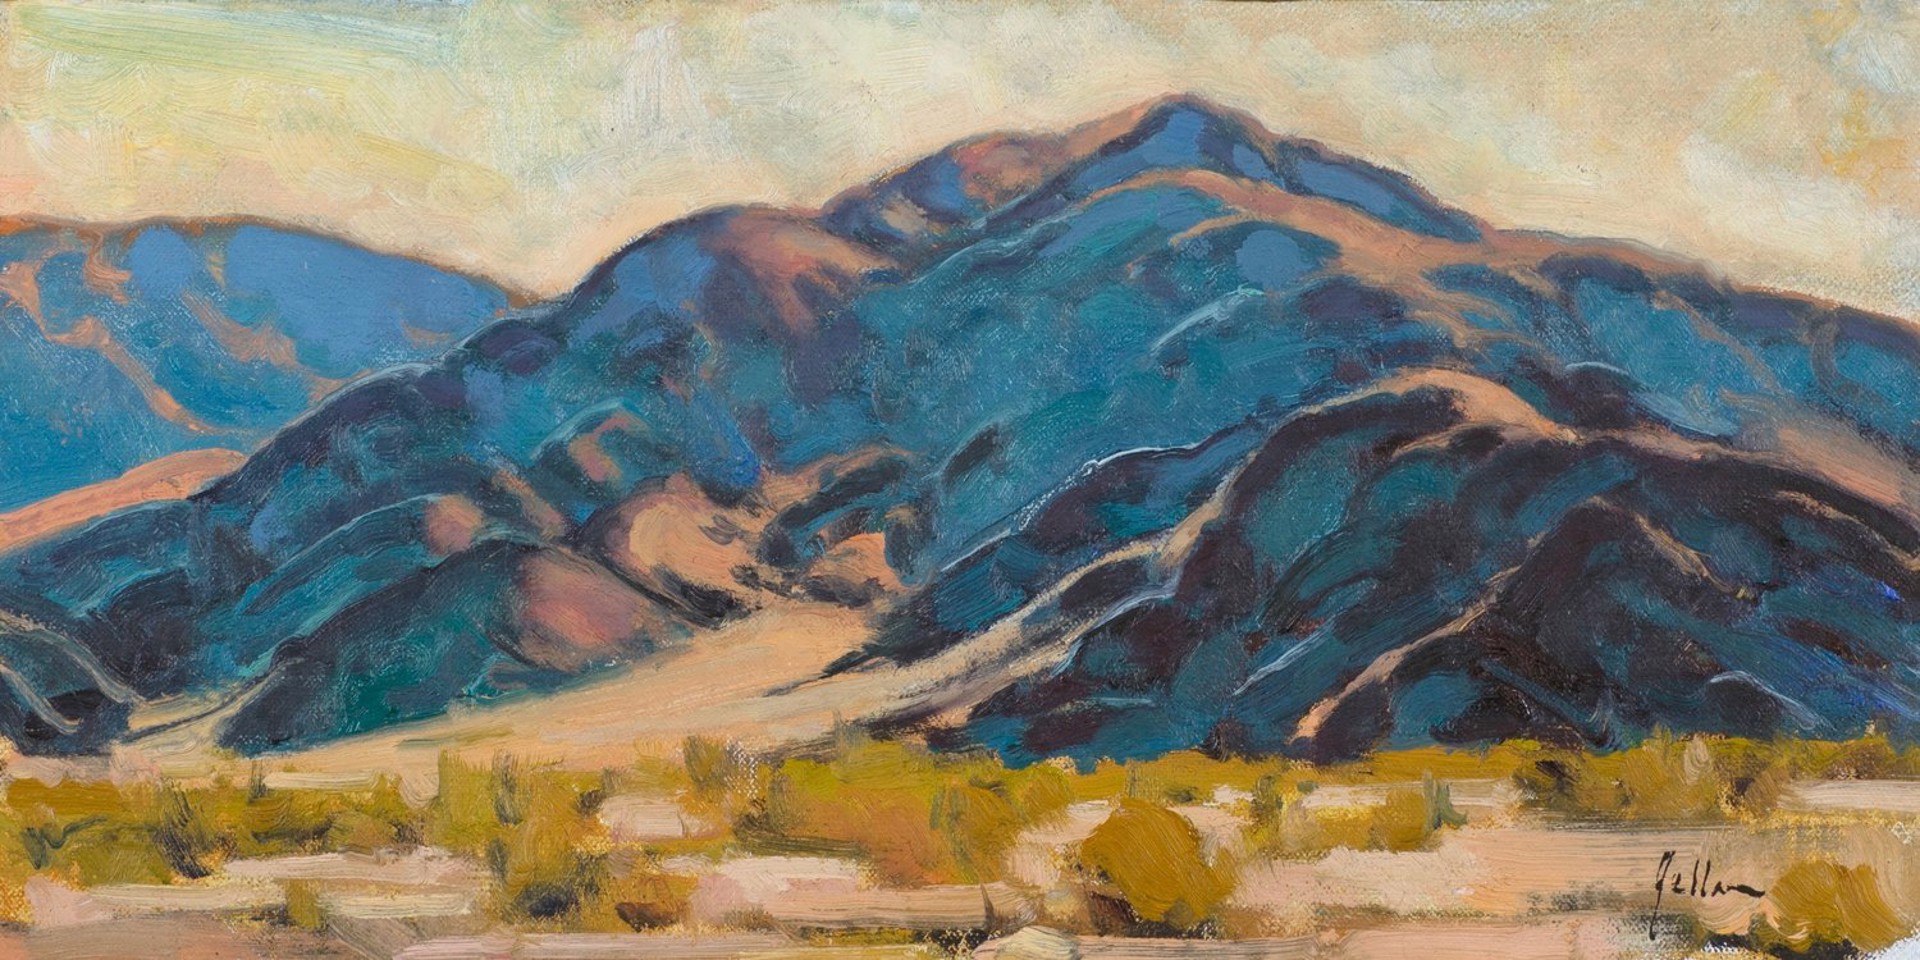 Death Valley Hills by Bill Gallen